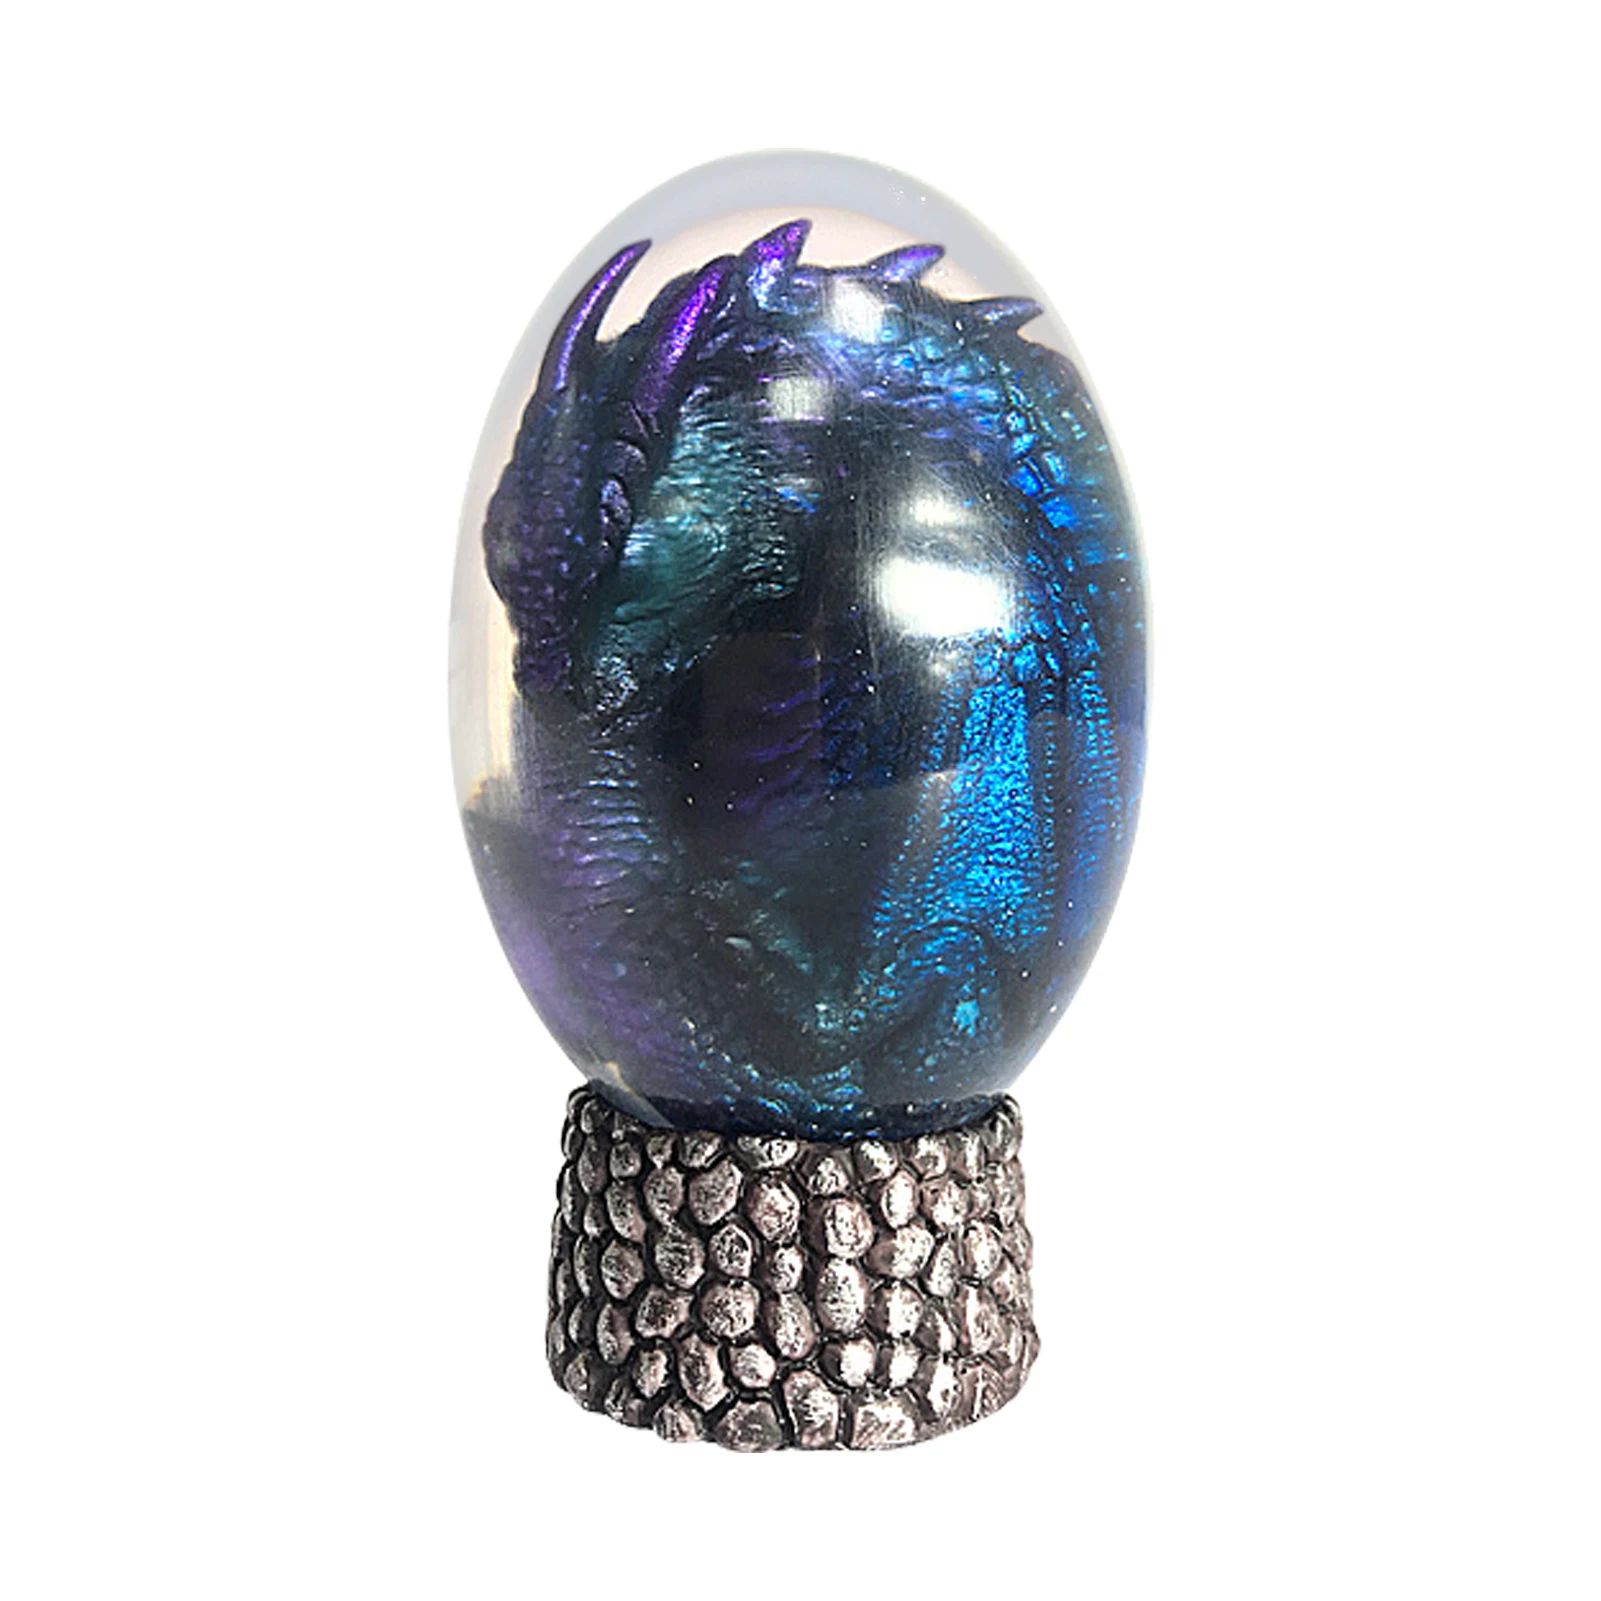 

Кристаллическая прозрачная полимерная статуя Дракон яйцо Лава Динозавр яйцо сувенирные Смола светящаяся игрушка домашний Декор подарок